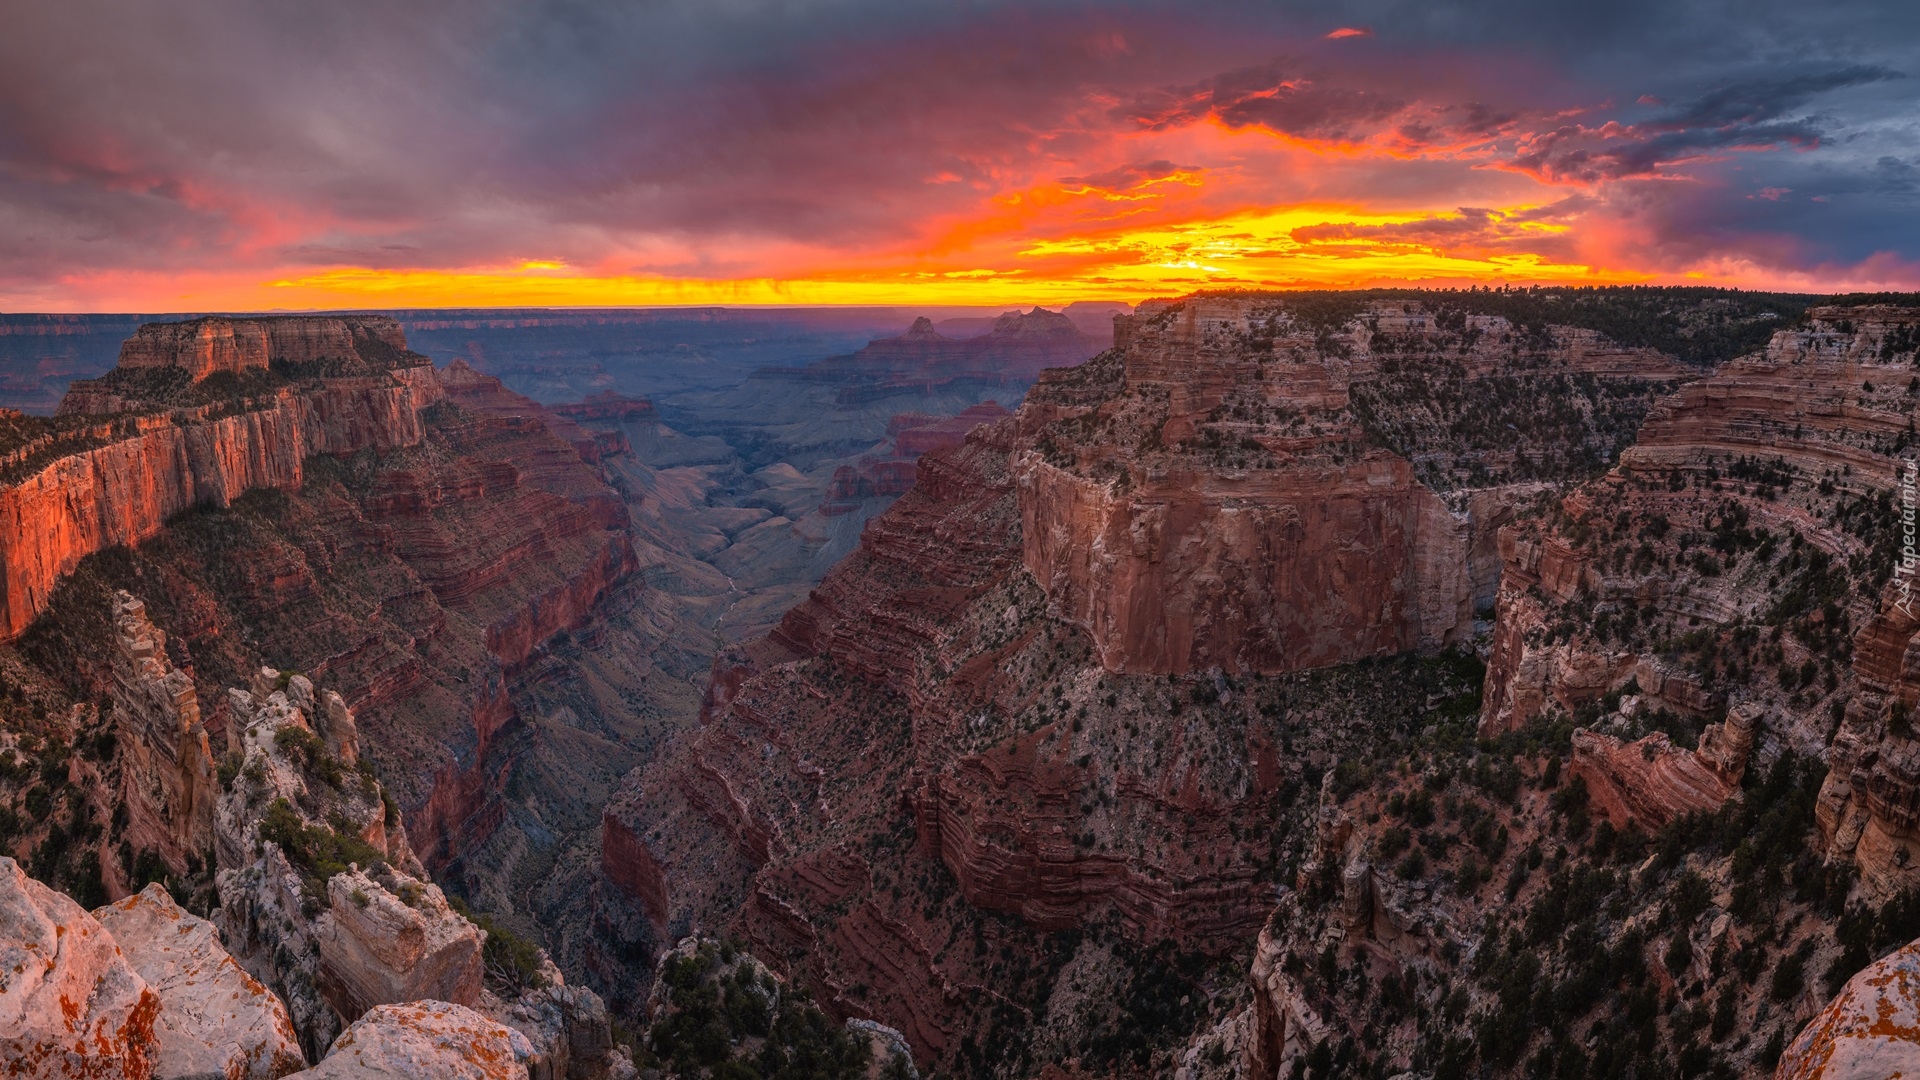 Park Narodowy Wielkiego Kanionu, Góry, Wielki Kanion Kolorado, Grand Canyon, Zachód słońca, Arizona, Stany Zjednoczone